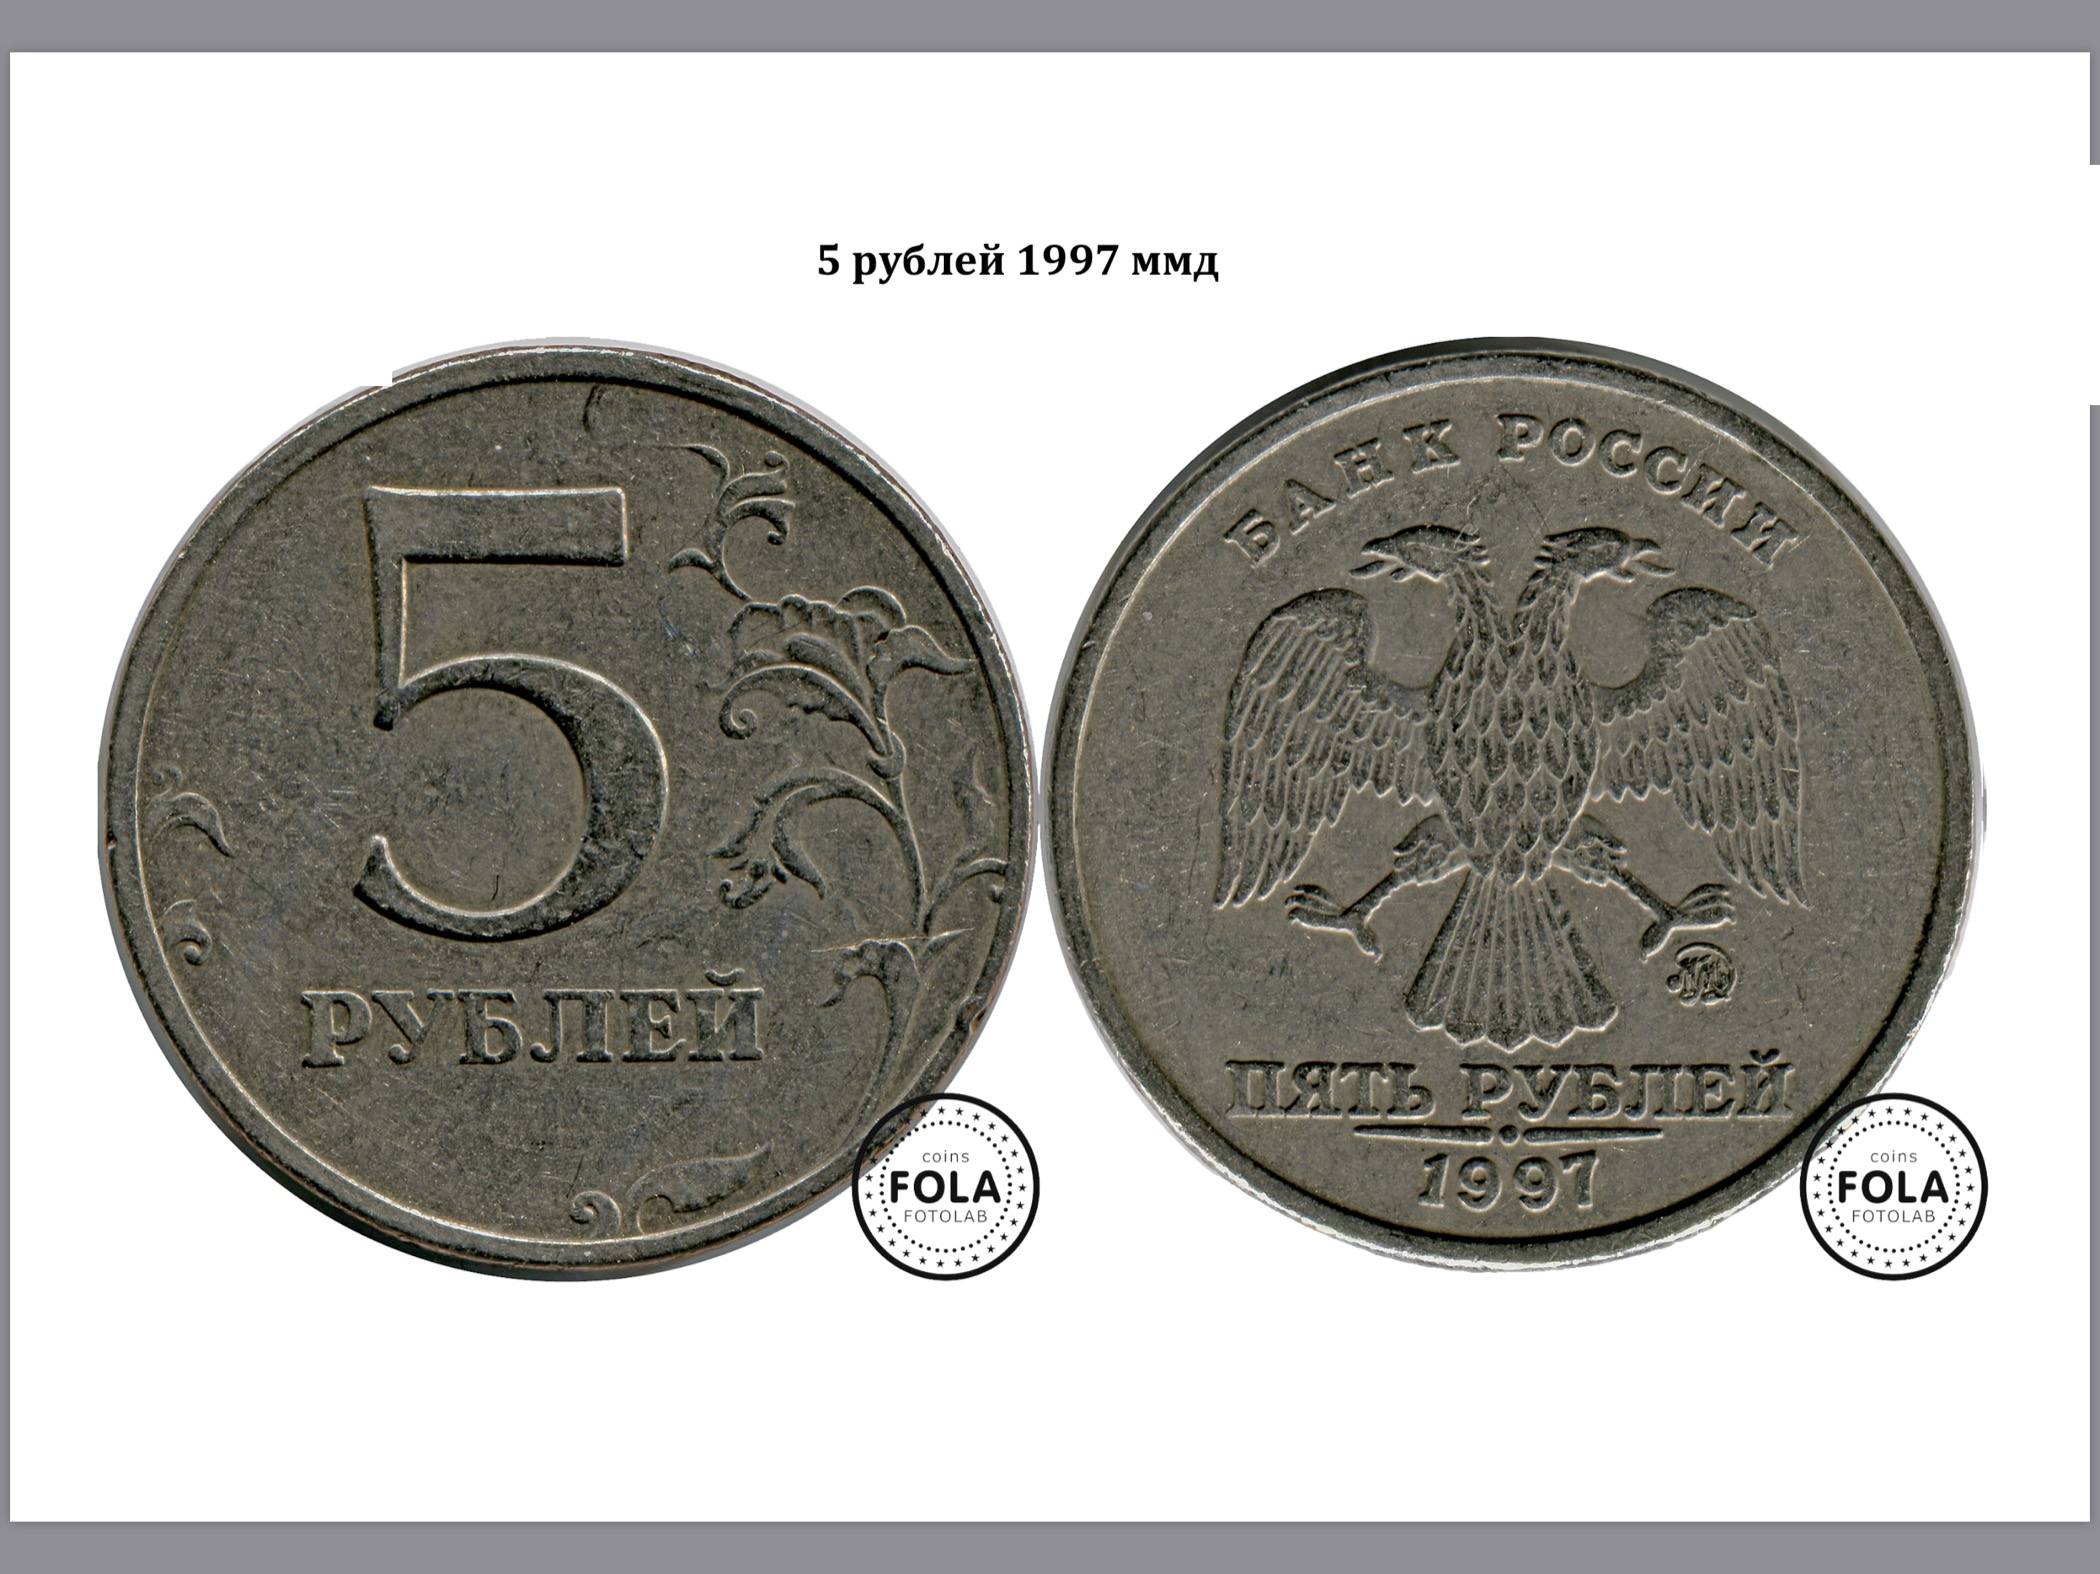 Продать 7 5 рублей. Монета 5 рублей 1997 ММД. 5 Рублей 1997 ММД. Редкие монеты 5 рублей 1997 ММД. 5 Рублей 1997 ММД Медно-алюминиевая.